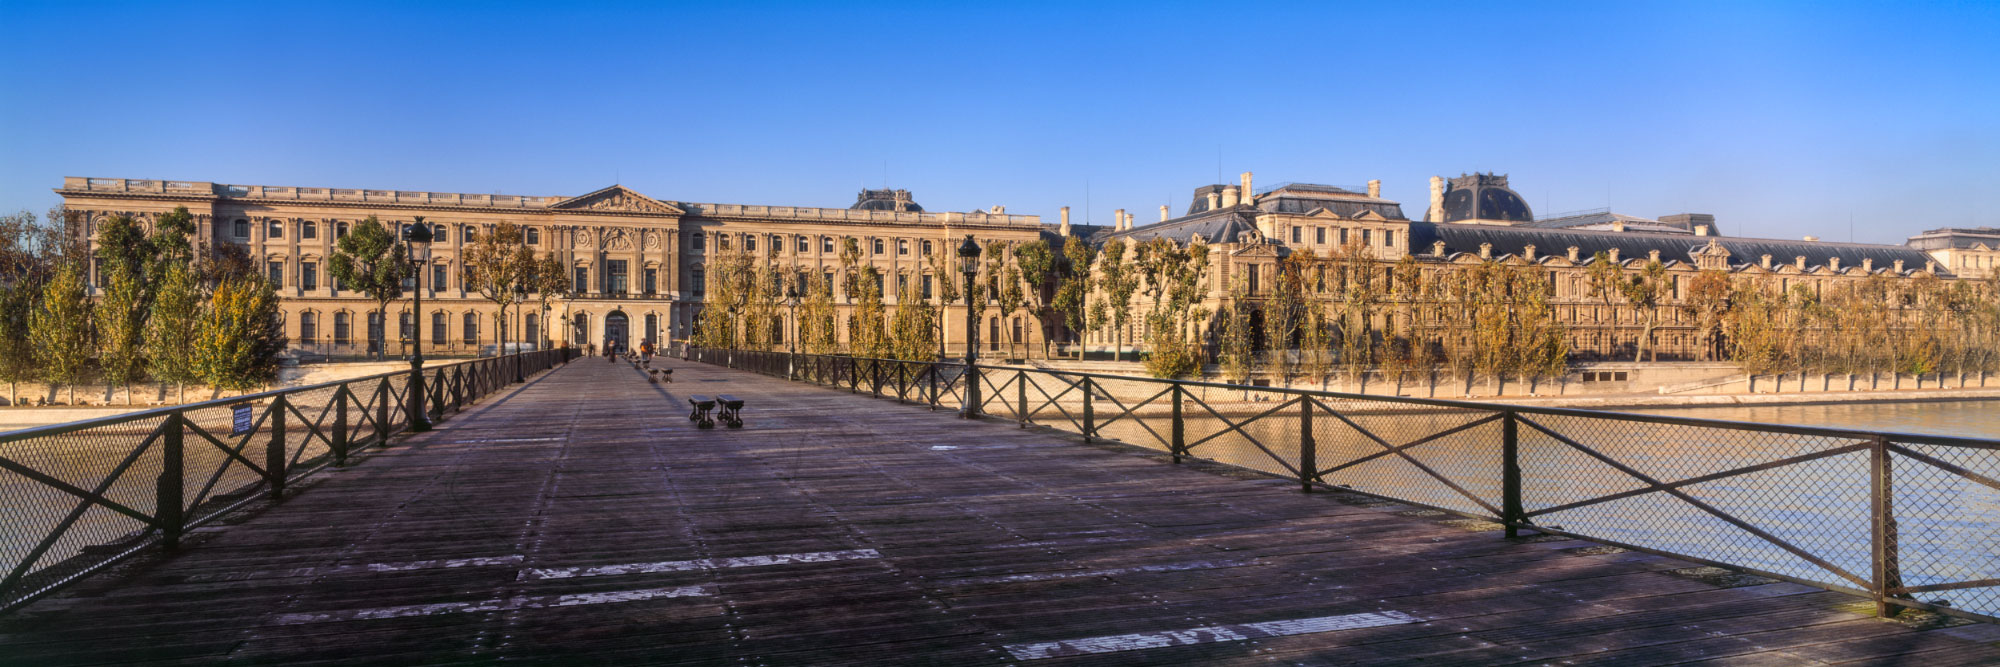 Le Louvre du pont des Arts